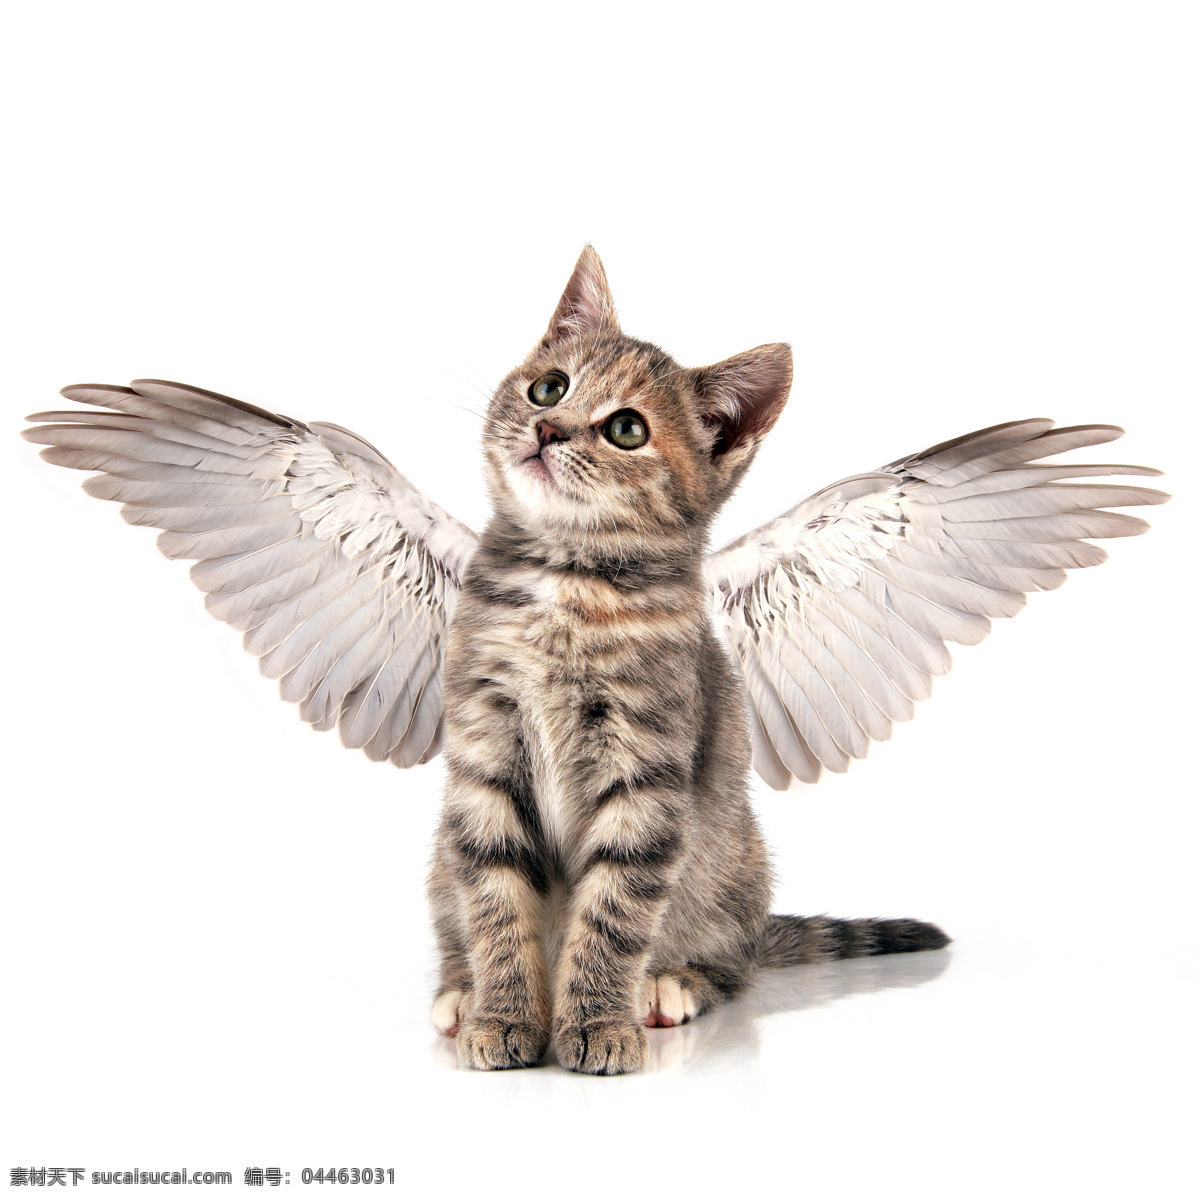 猫咪 猫 猫科动物 野生动物 高清摄影 商业摄影 招手 翅膀 创意摄影 宠物摄影 家禽家畜 生物世界